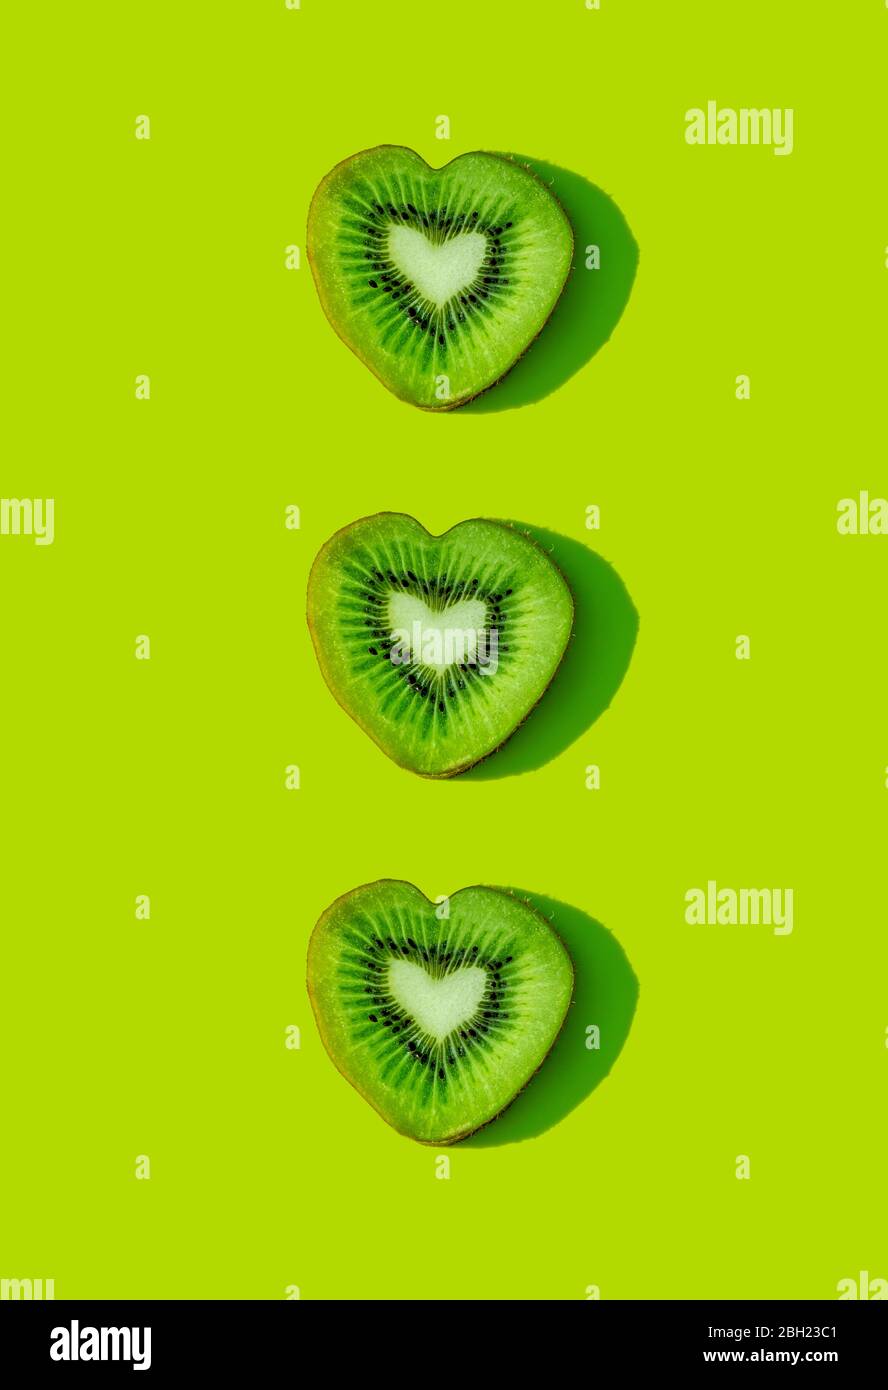 Motif de tranches de kiwi en forme de cœur sur fond vert Banque D'Images